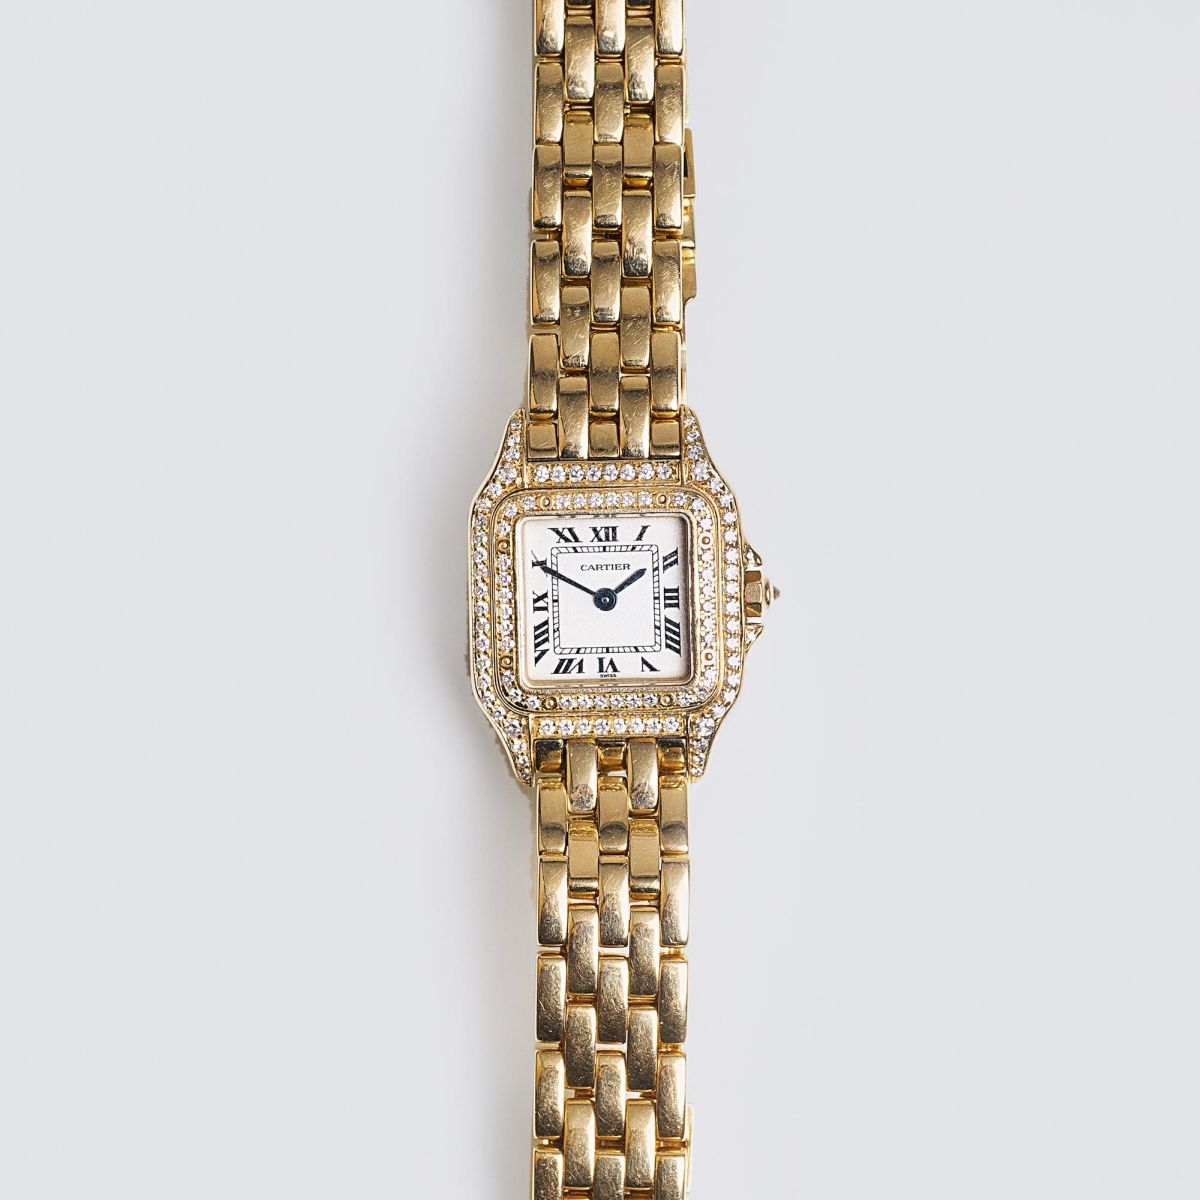 Vintage Damen-Armbanduhr 'Panthere' mit Diamanten